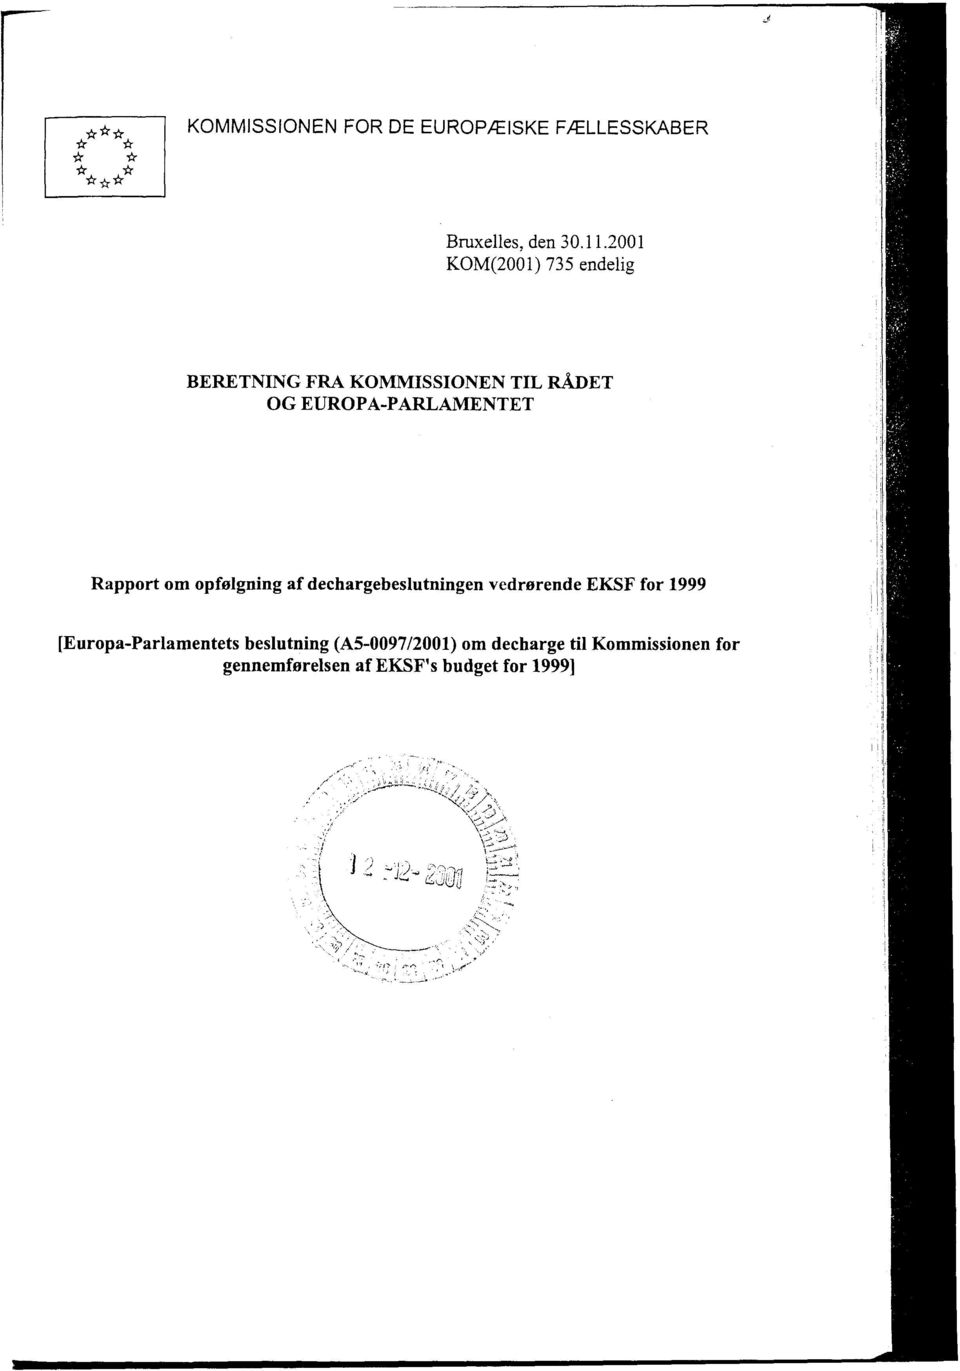 Rapport om opfølgning af dechargebeslutningen vedrørende EKSF for 1999